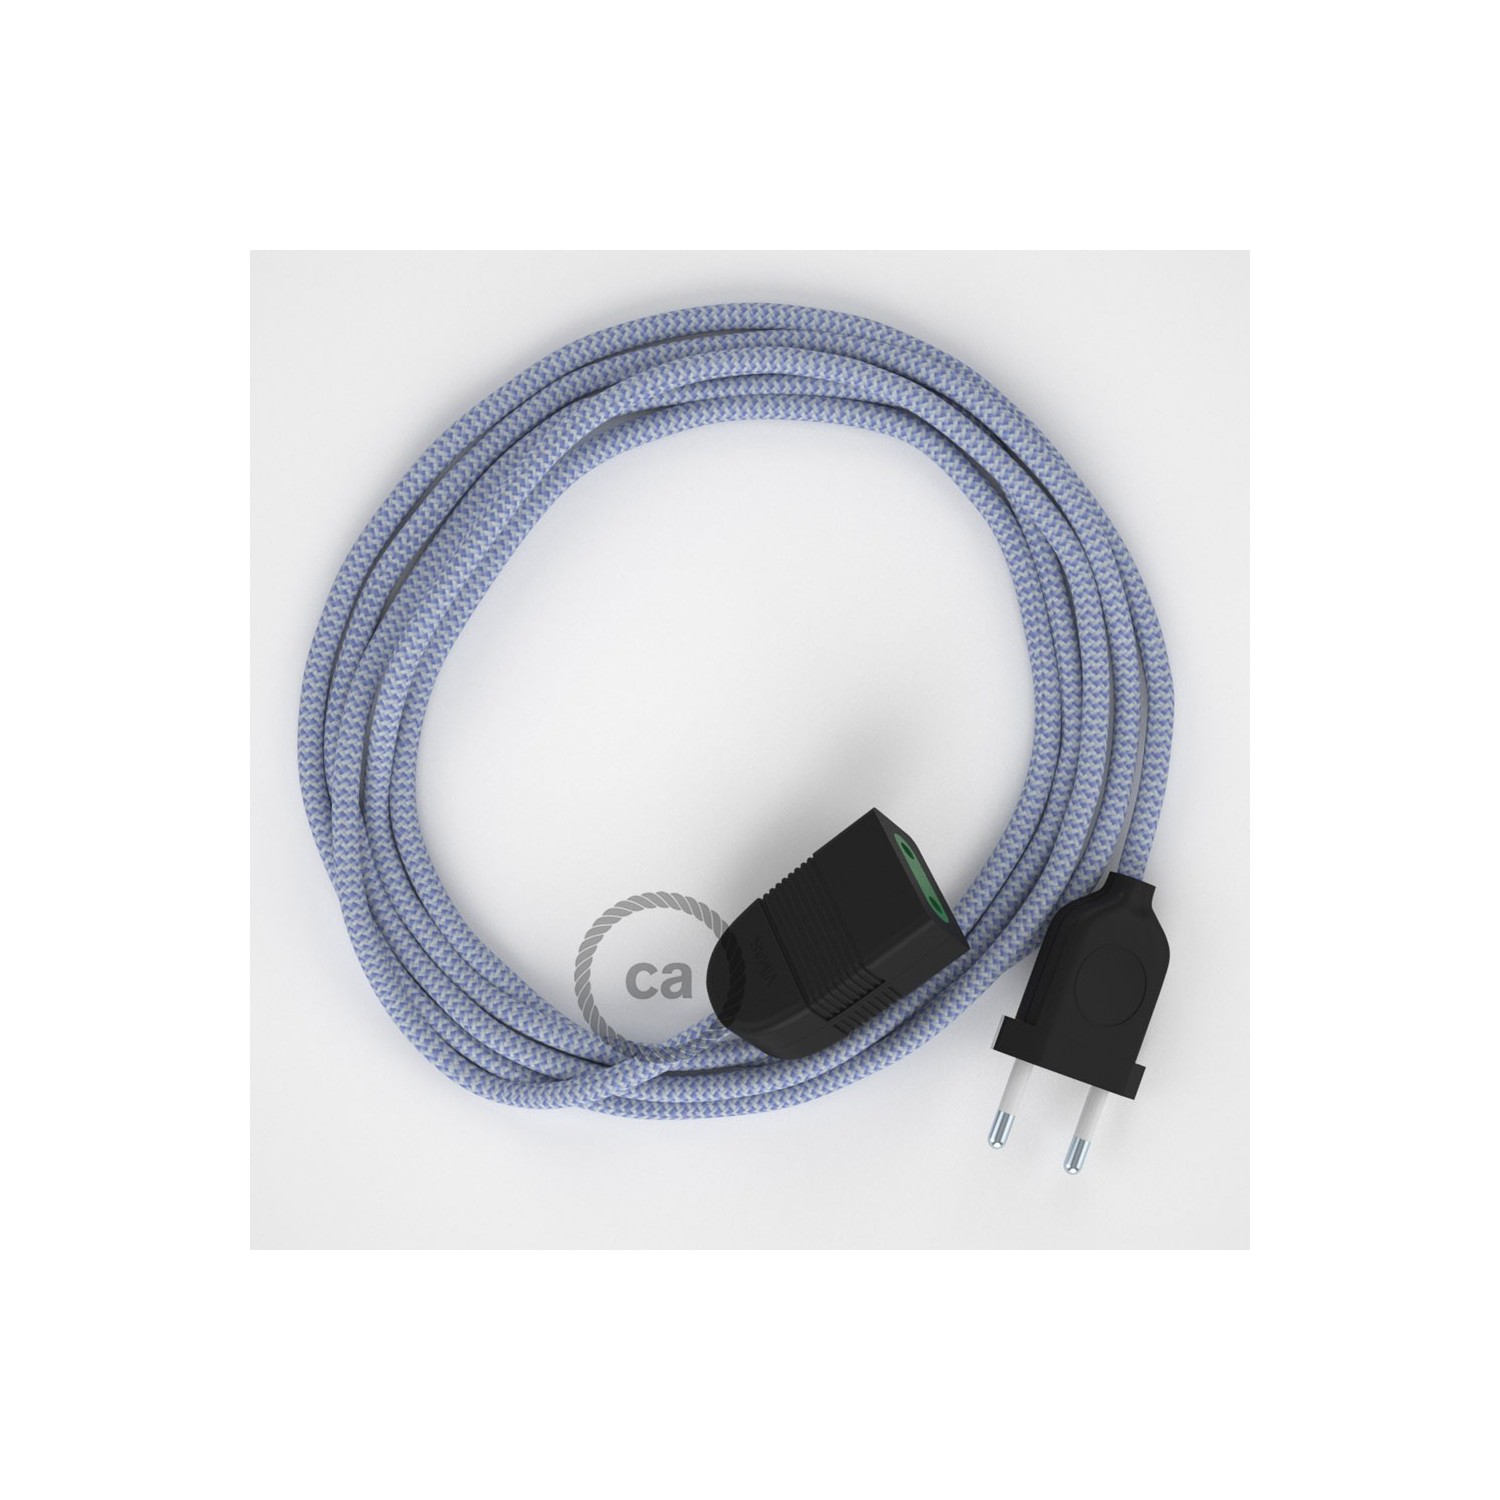 Rallonge électrique avec câble textile RZ07 Effet Soie ZigZag Blanc-Lilas 2P 10A Made in Italy.